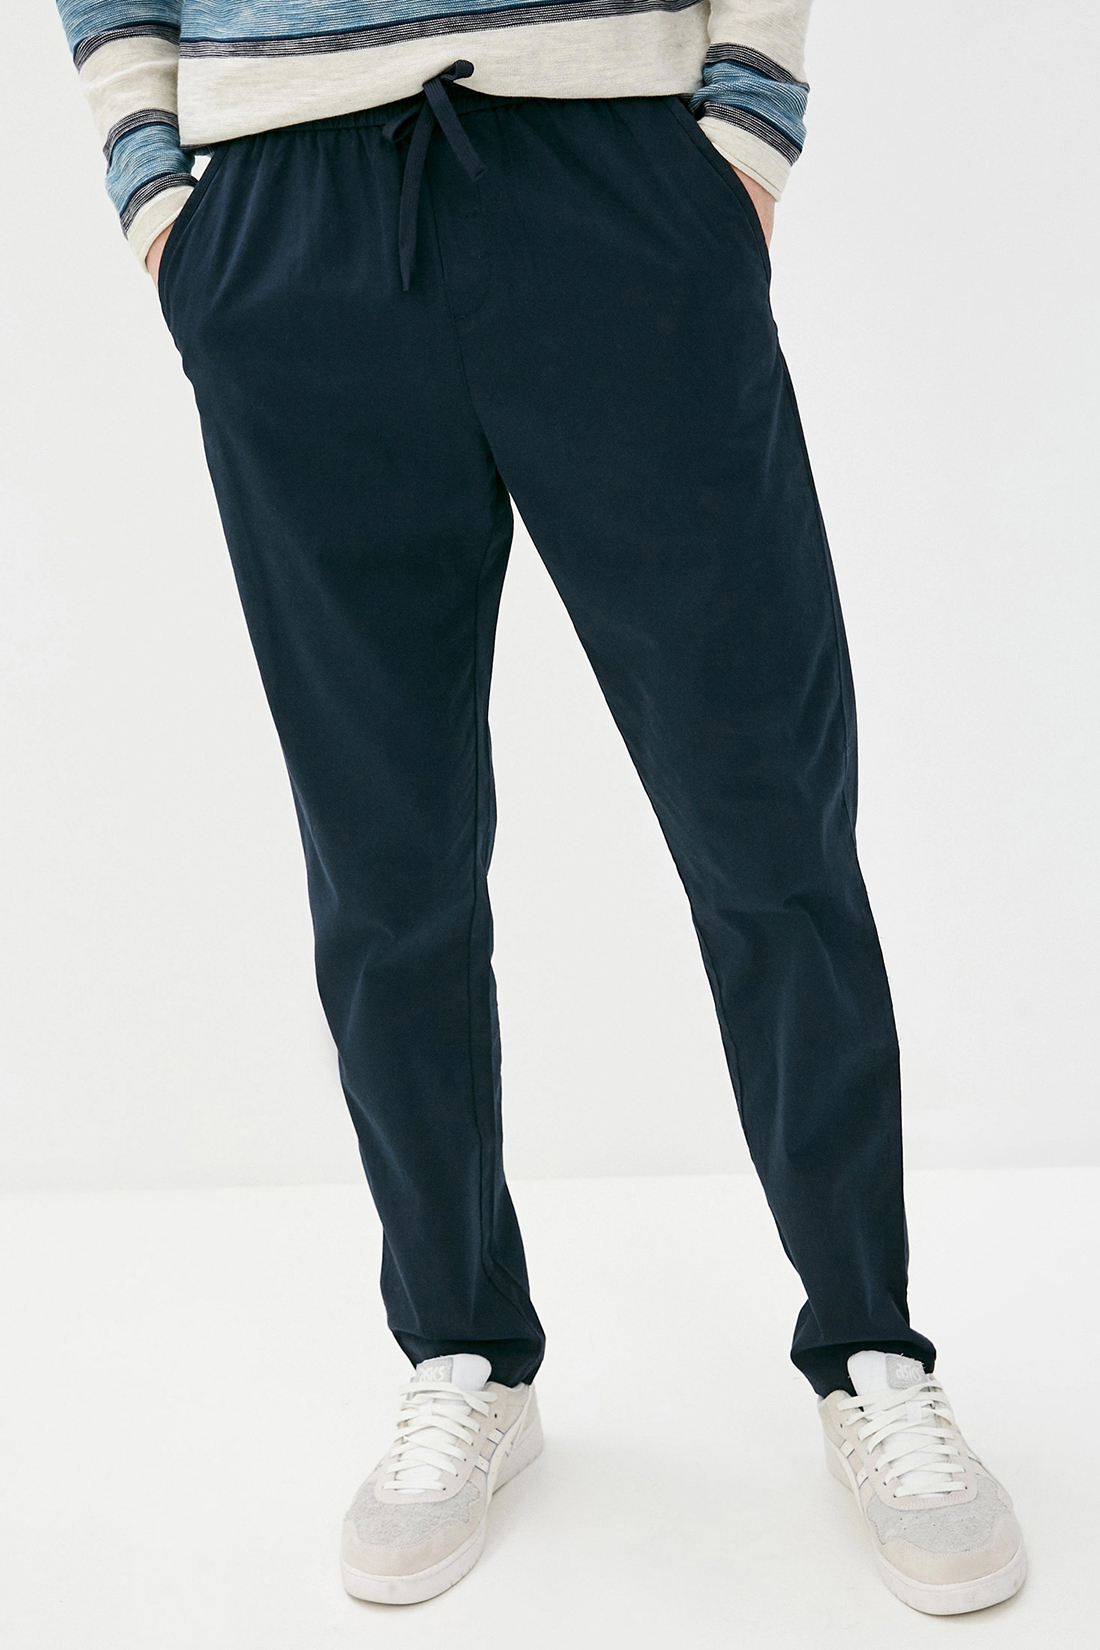 Спортивные брюки мужские Baon B791201 синие, спортивные брюки, синий, хлопок  - купить